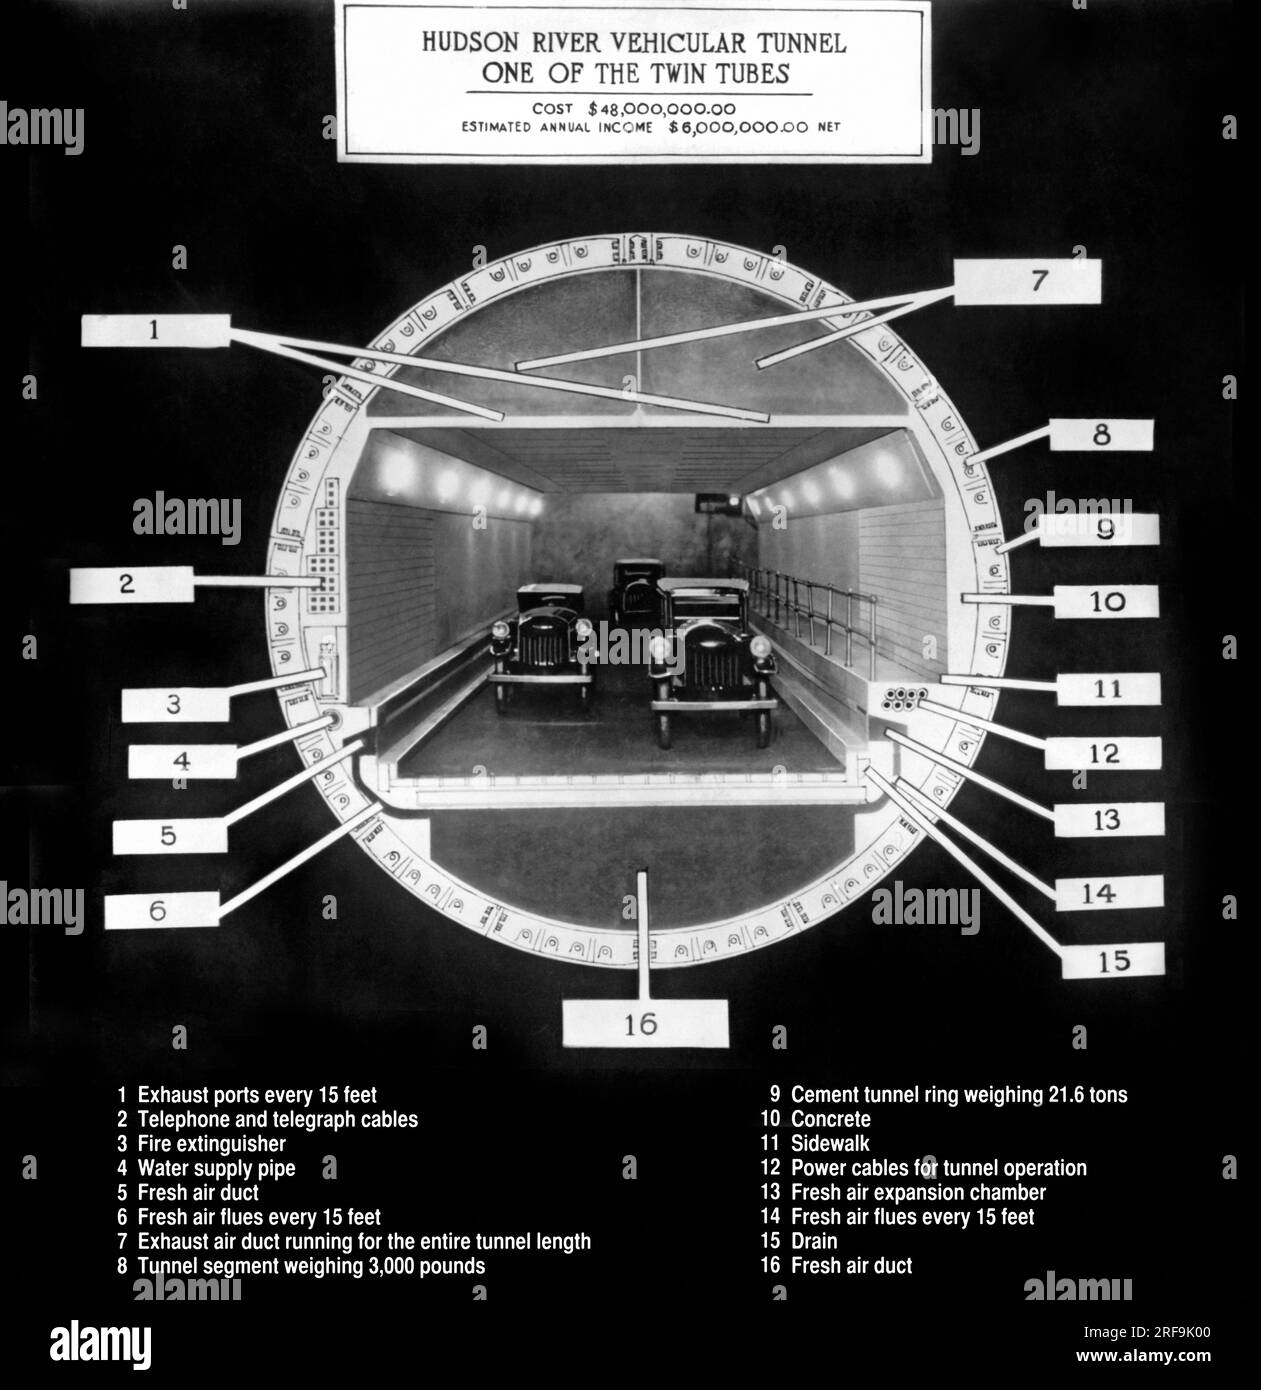 New York, New York: c. 1922 Una visione sezionale dell'Holland Tunnel, una meraviglia della scienza moderna, e tutte le sue caratteristiche: 1. Aeroporti di scarico. 2. Cavi telefonici e telegrafici. 3. Estintore. 4. Tubo di alimentazione dell'acqua. 5. Condotto continuo per l'alimentazione di aria fresca. 6. L'aria fresca fluisce ogni 15 metri. 7. Condotti dell'aria di scarico che percorrono la lunghezza del tunnel. 8. Segmento di tunnel del peso di 3000 libbre. 9. Peso dell'anello completo 21,6 tonnellate. 10. Calcestruzzo. 11. Marciapiede. 12. Cavi di alimentazione per tunnel. 13. Camera di espansione dell'aria esterna. 14. L'aria fresca canna fumaria ogni 15 piedi. 15. Scaricare. 16. Condotto dell'aria esterna che corre per intero l Foto Stock